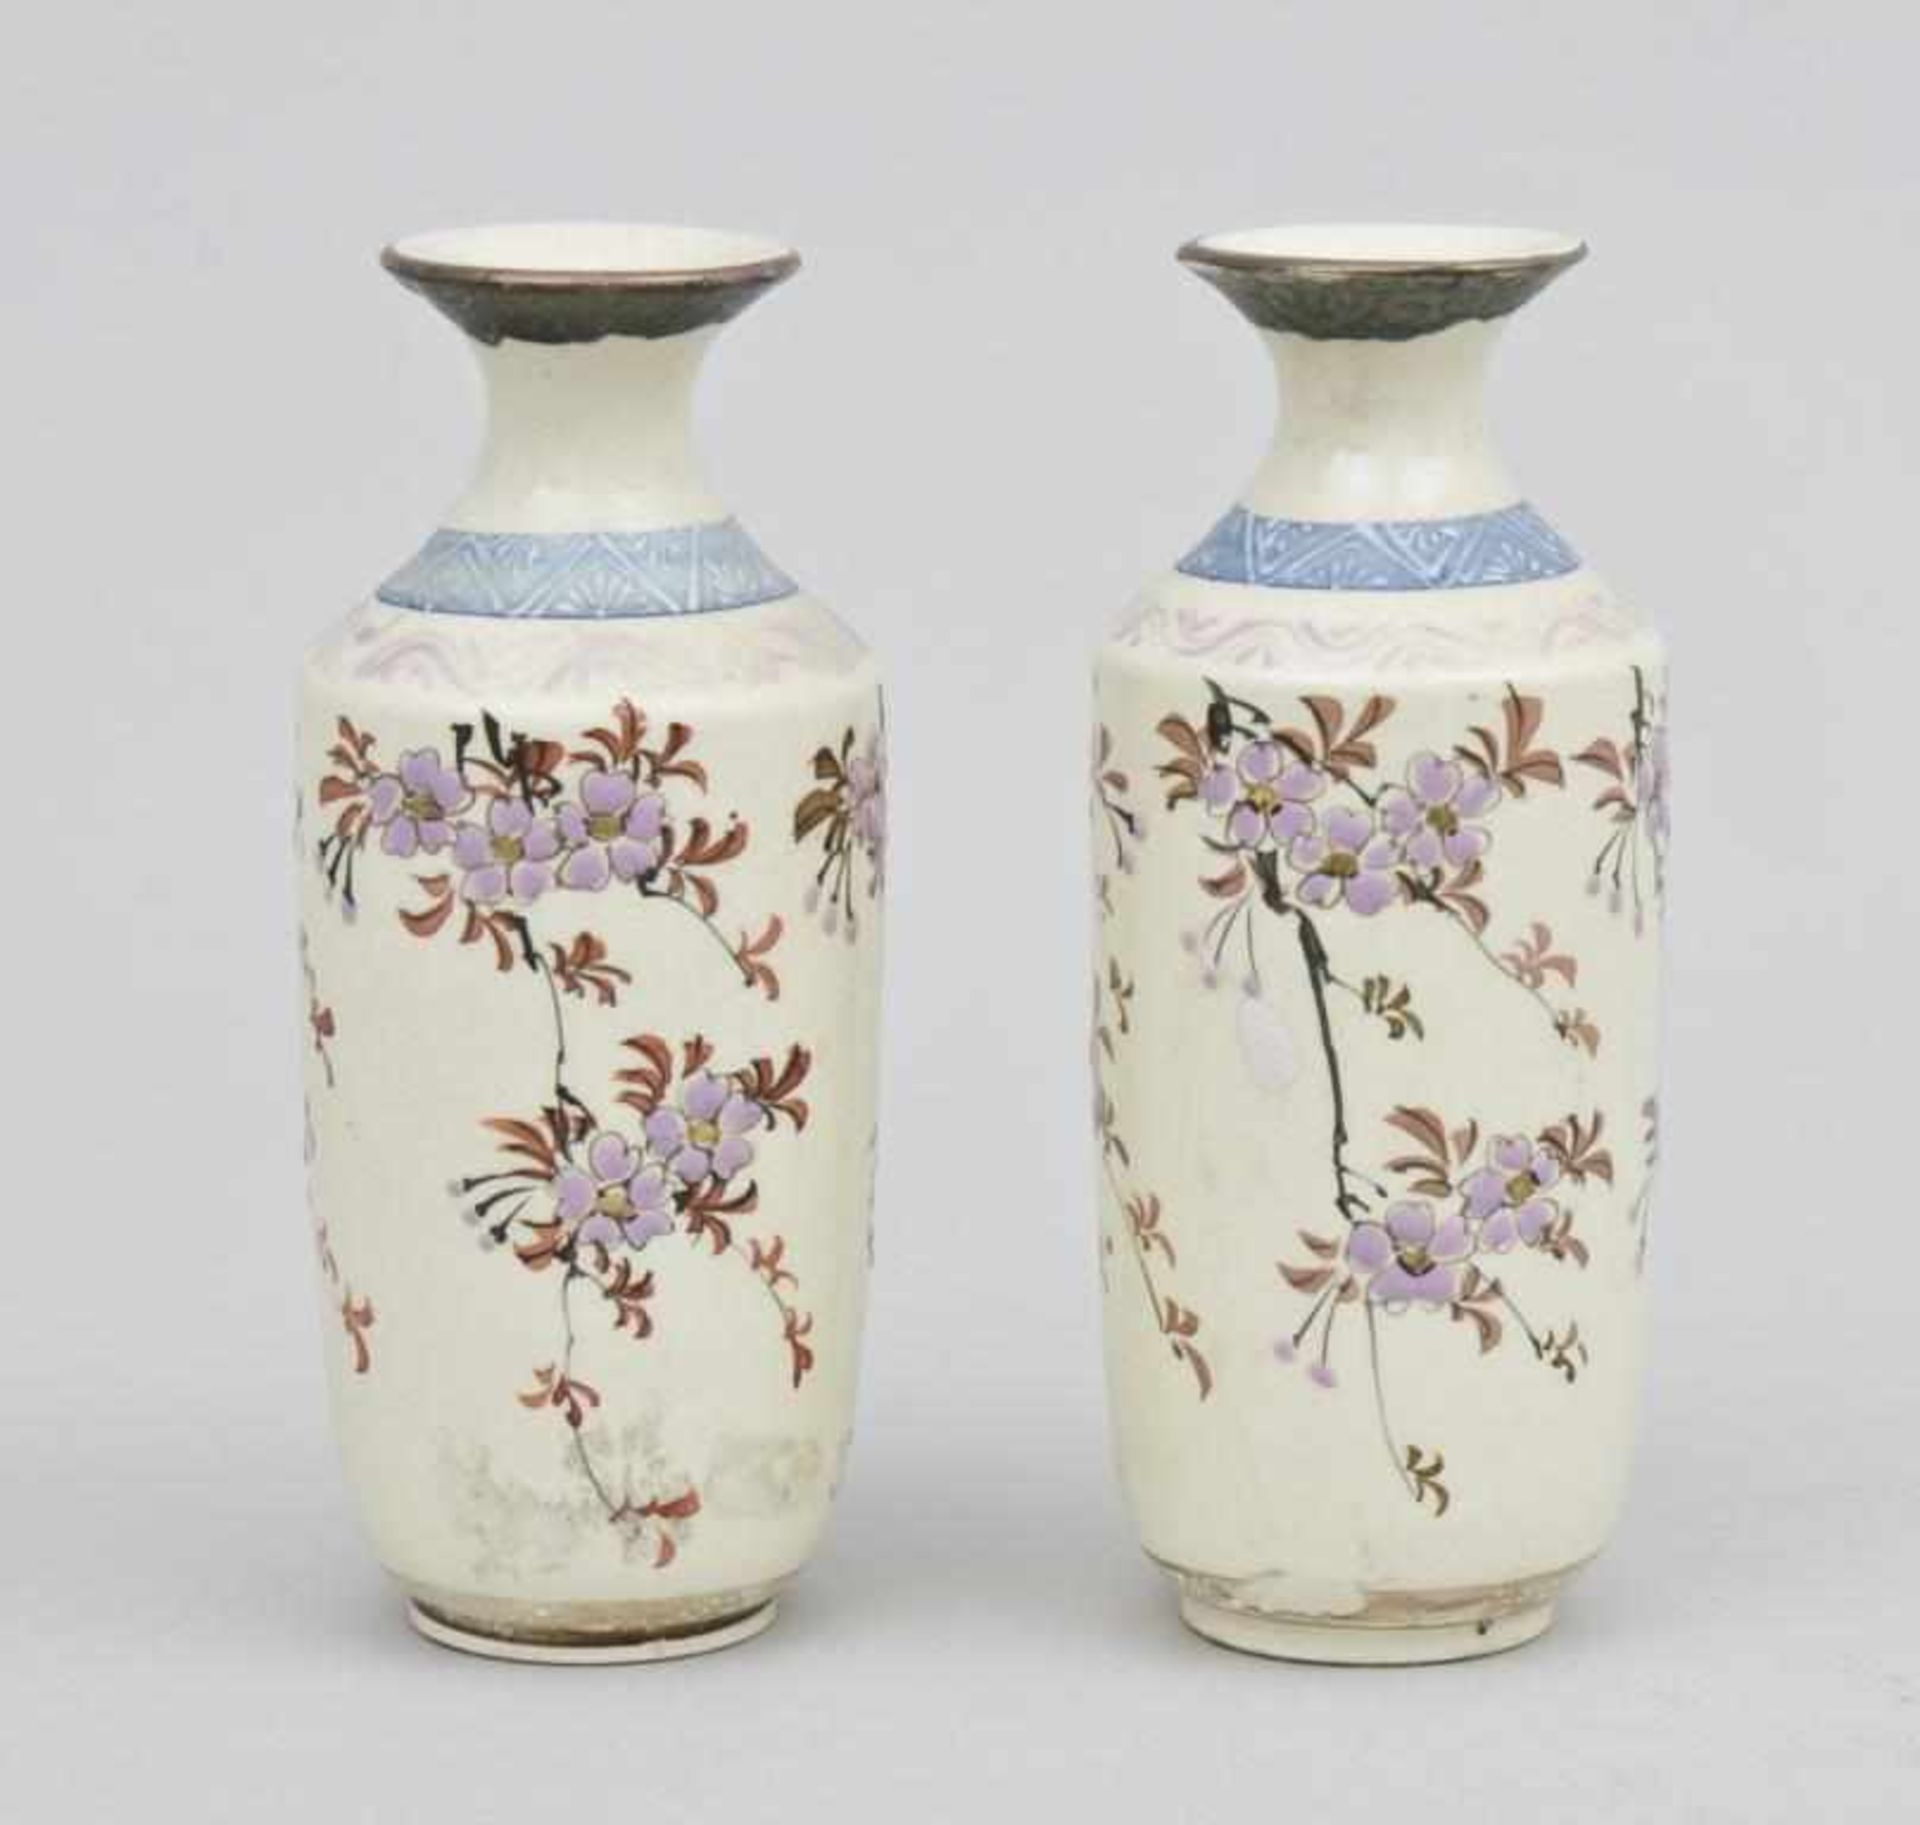 Paar Email-Väschen/A Pair of Enamel Vases, Japan, um 1880Bronze, cremefarben emailliert. Umlaufend